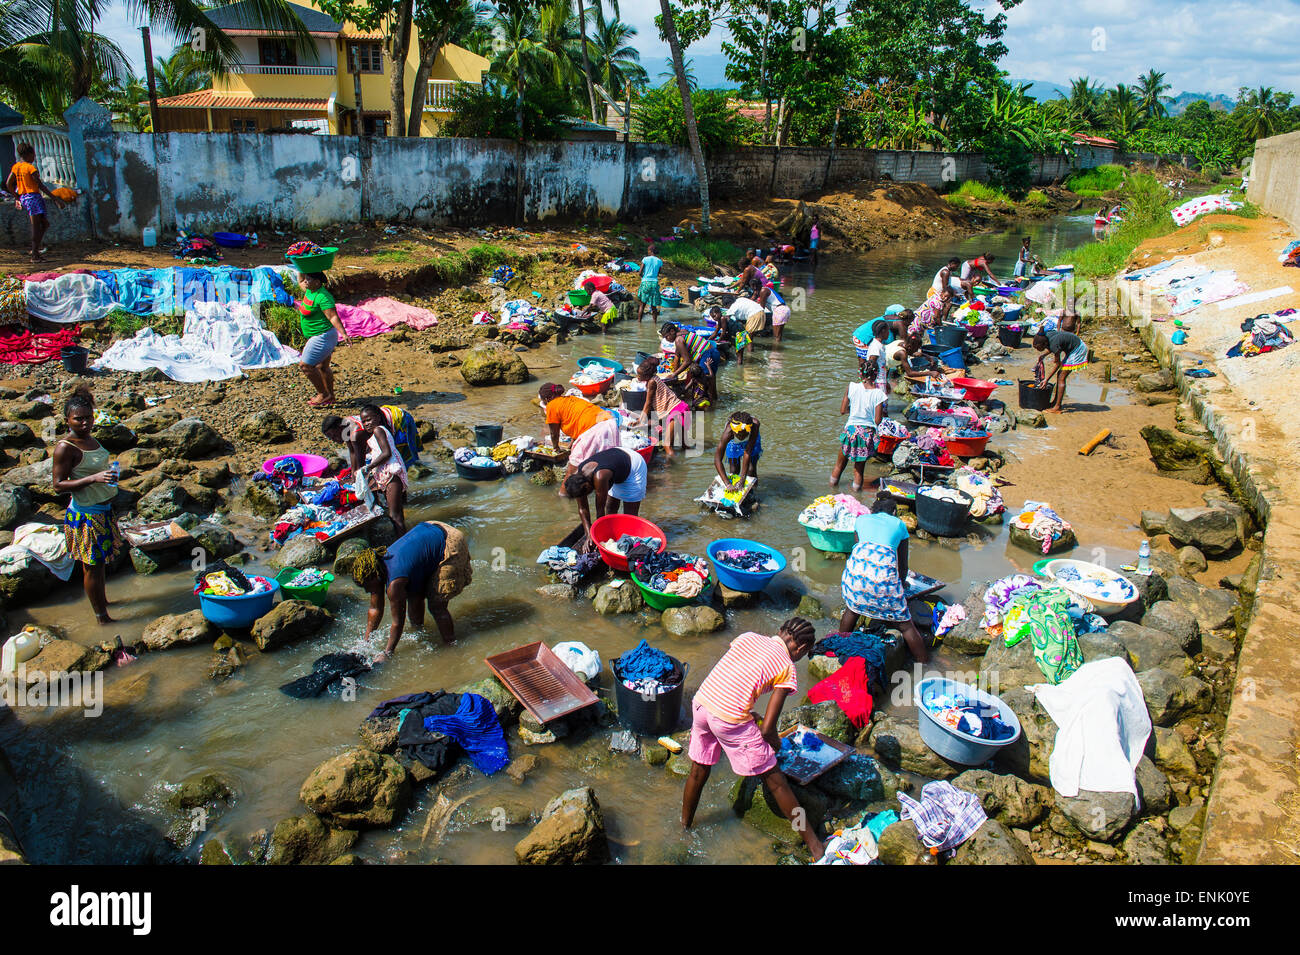 Les femmes lavent les vêtements dans le lit d'une rivière, ville de Sao Tomé, Sao Tomé et Principe, Océan Atlantique, Afrique Banque D'Images